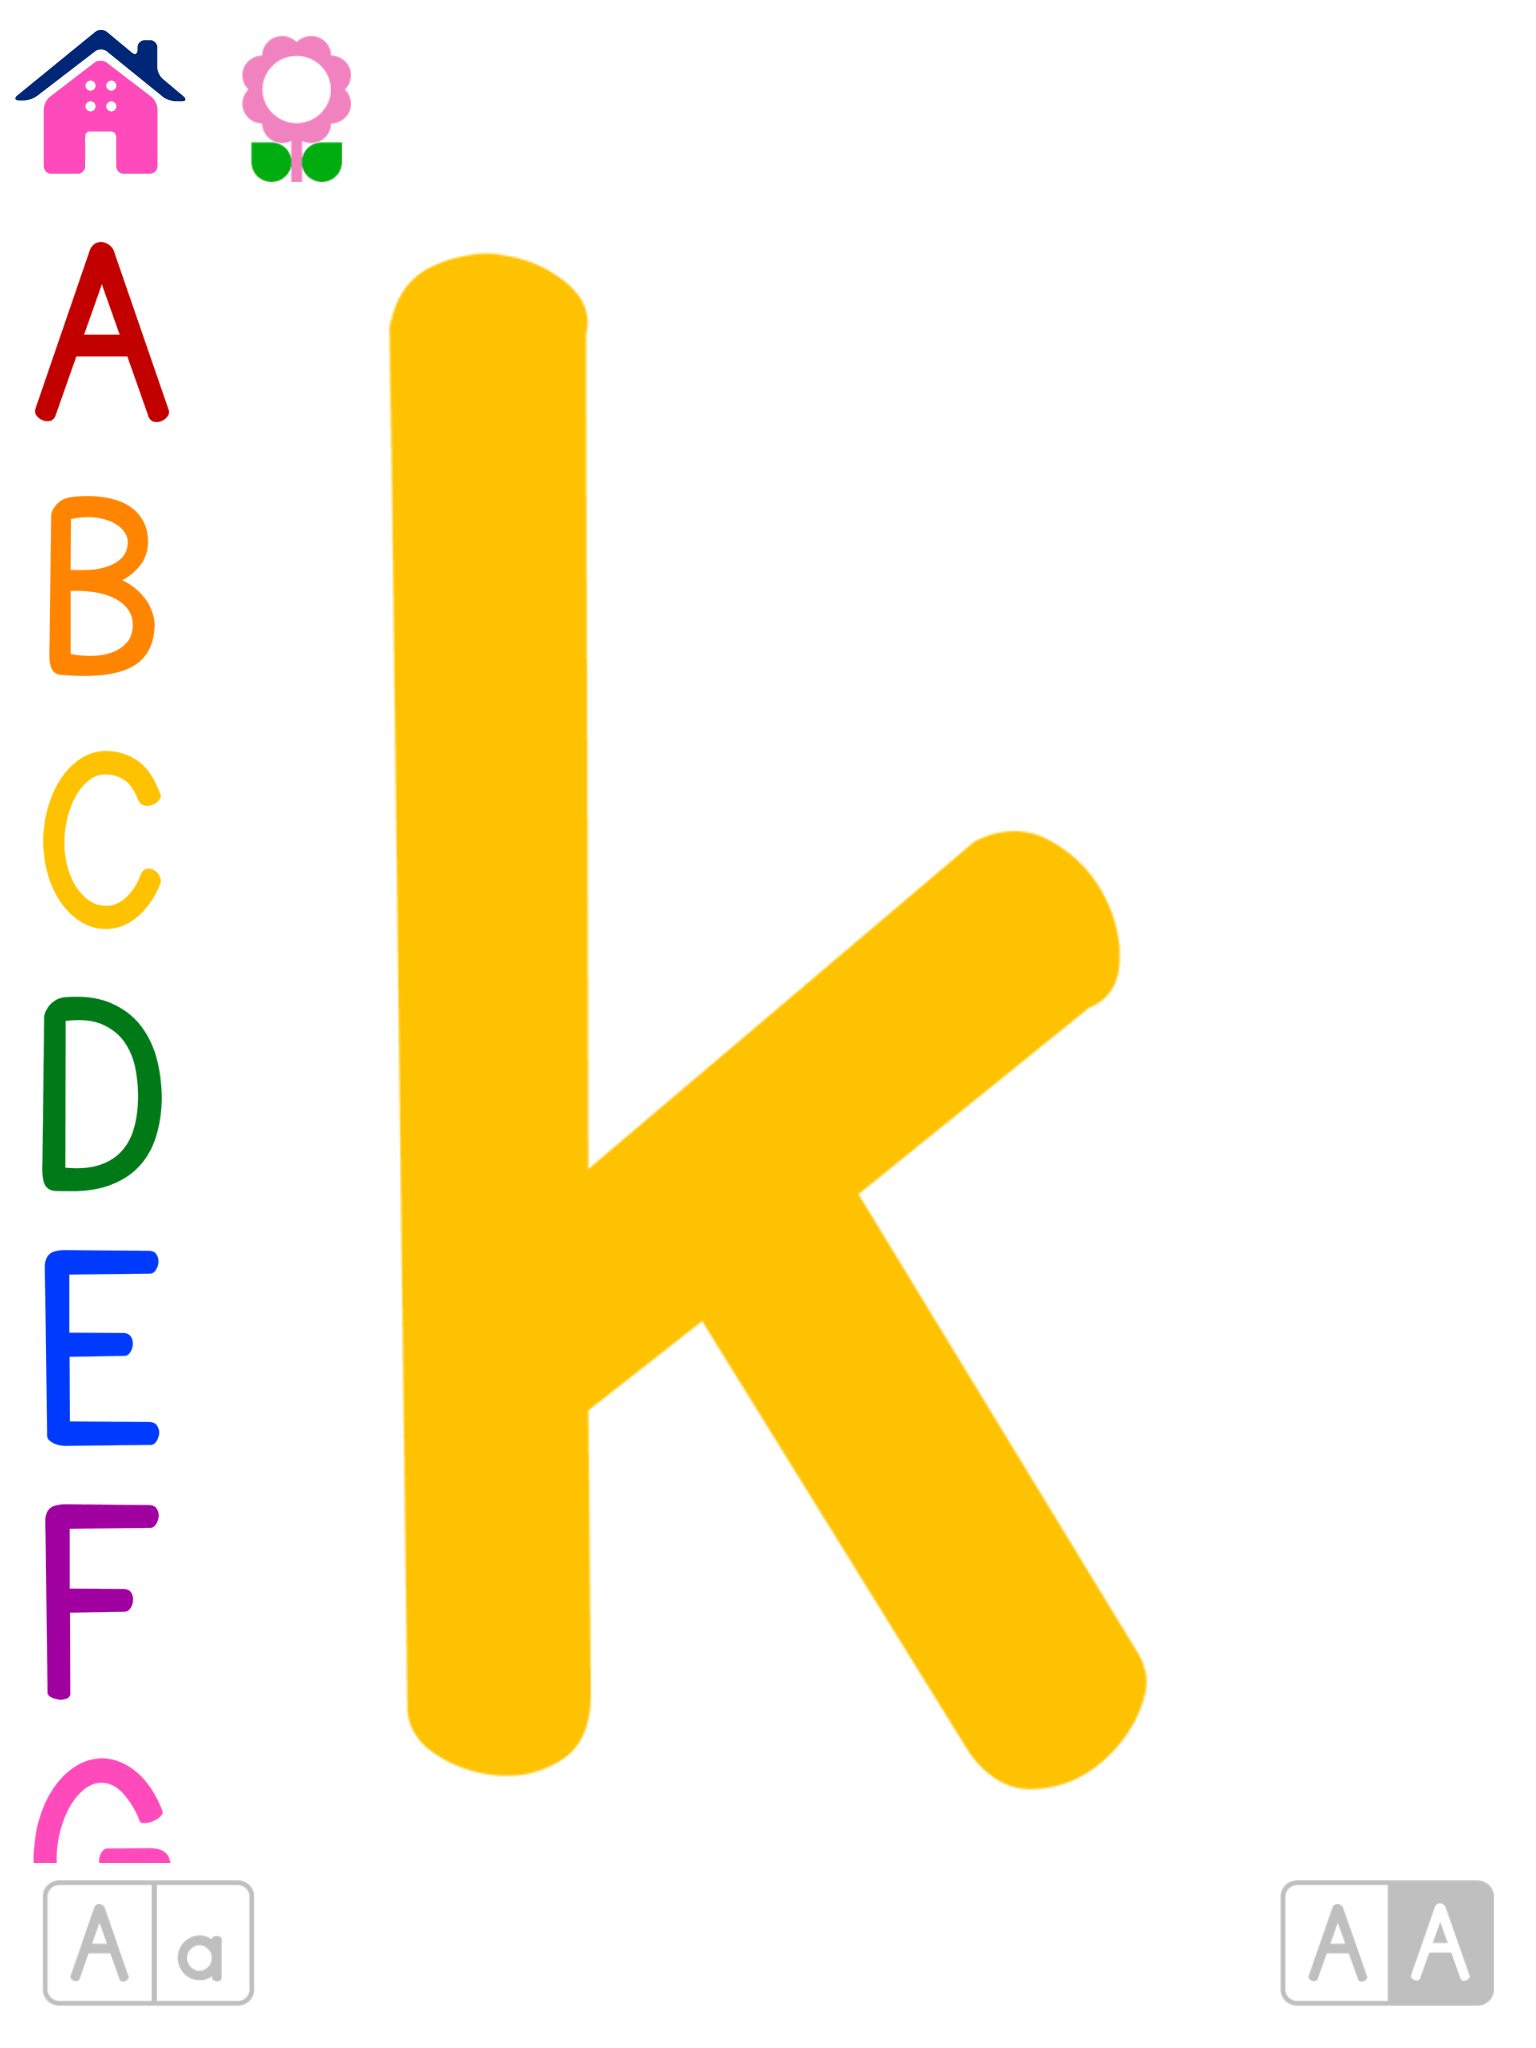 ABC Colorido | Flashcards alfabéticas para niños en jardín de infante